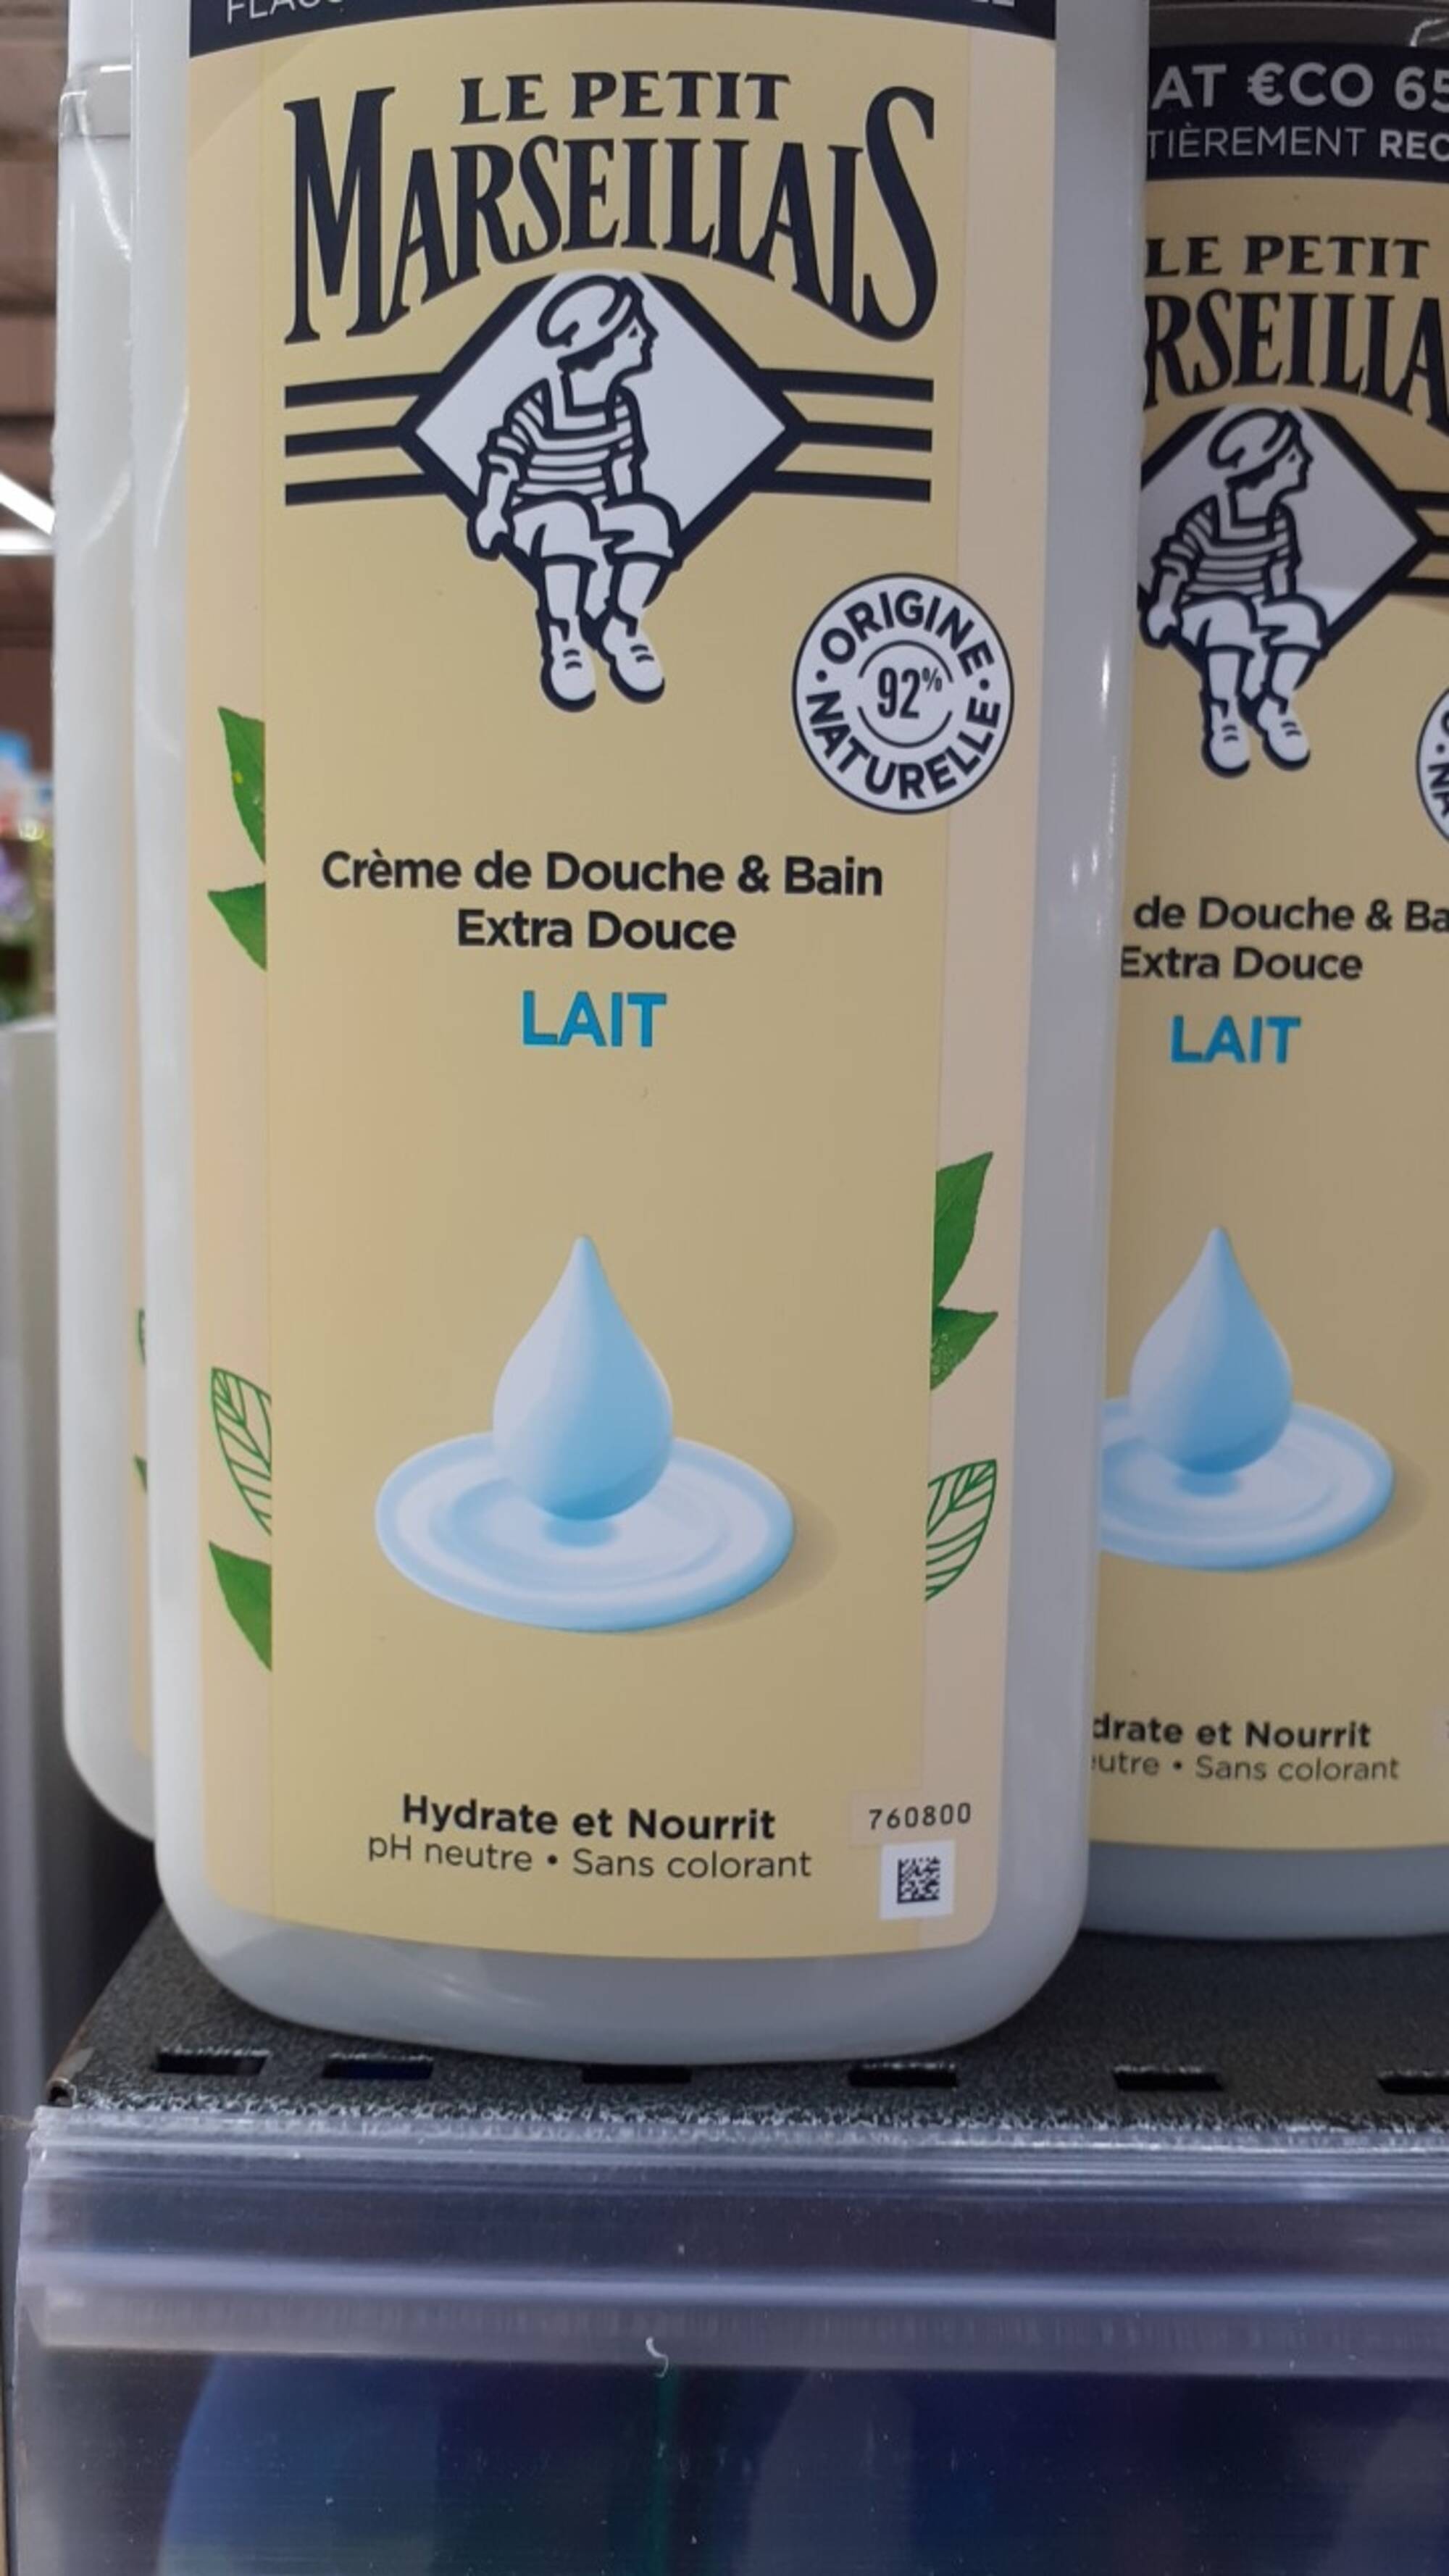 LE PETIT MARSEILLAIS - Lait - Crème de douche & Bain extra douce